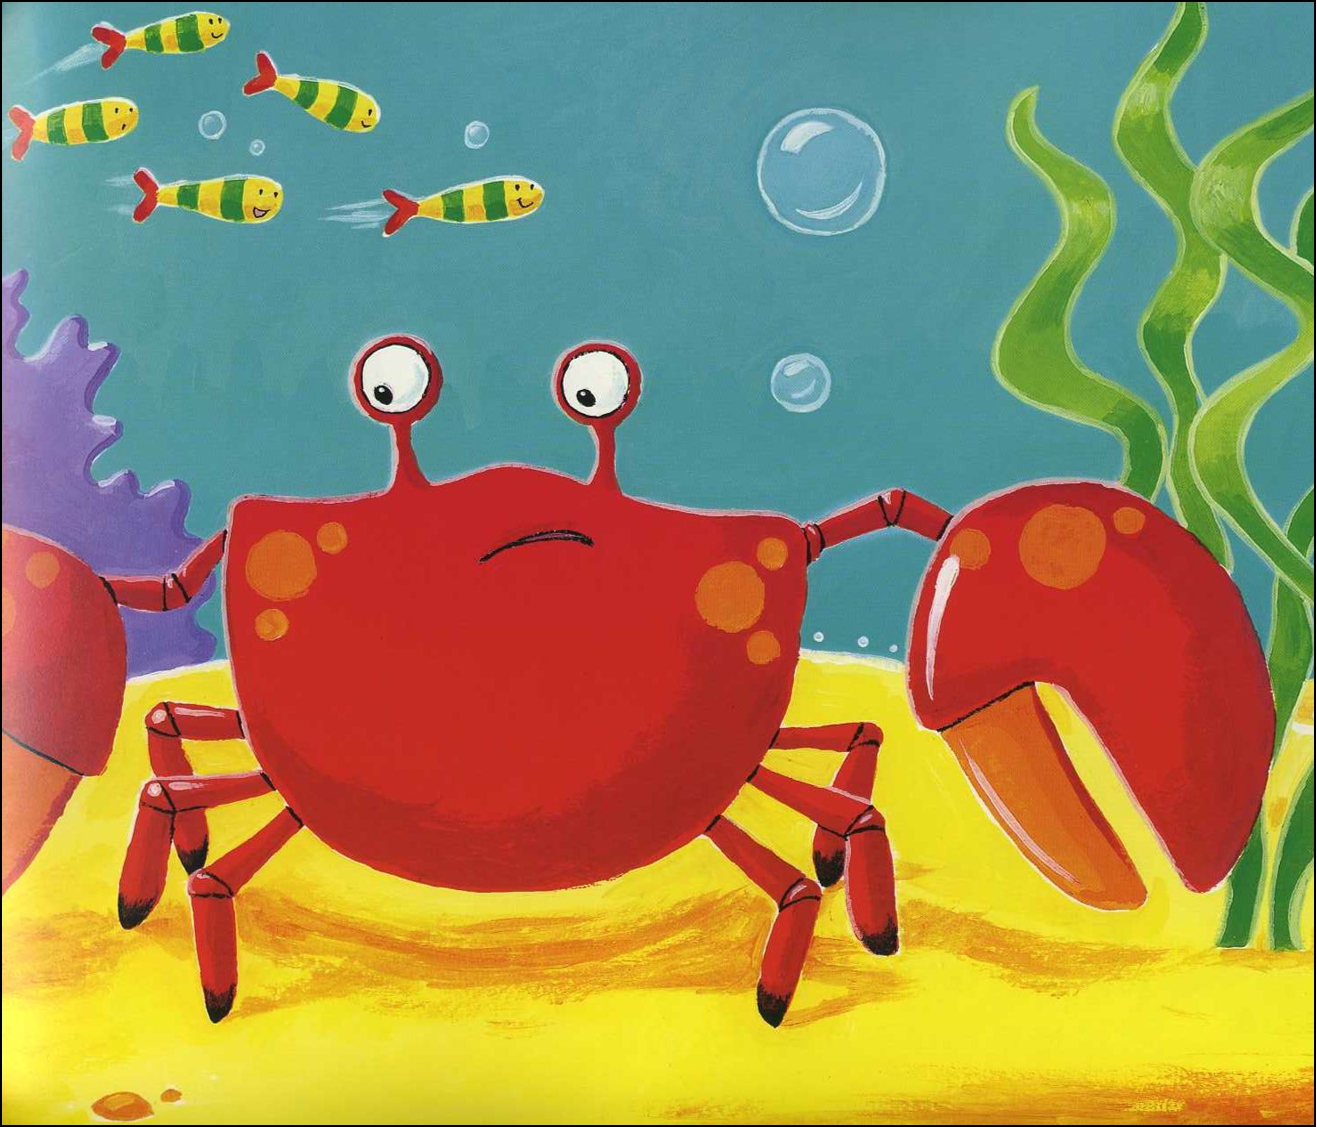 螃蟹缺一条腿猜成语_螃蟹卡通图片_疯狂猜成语网